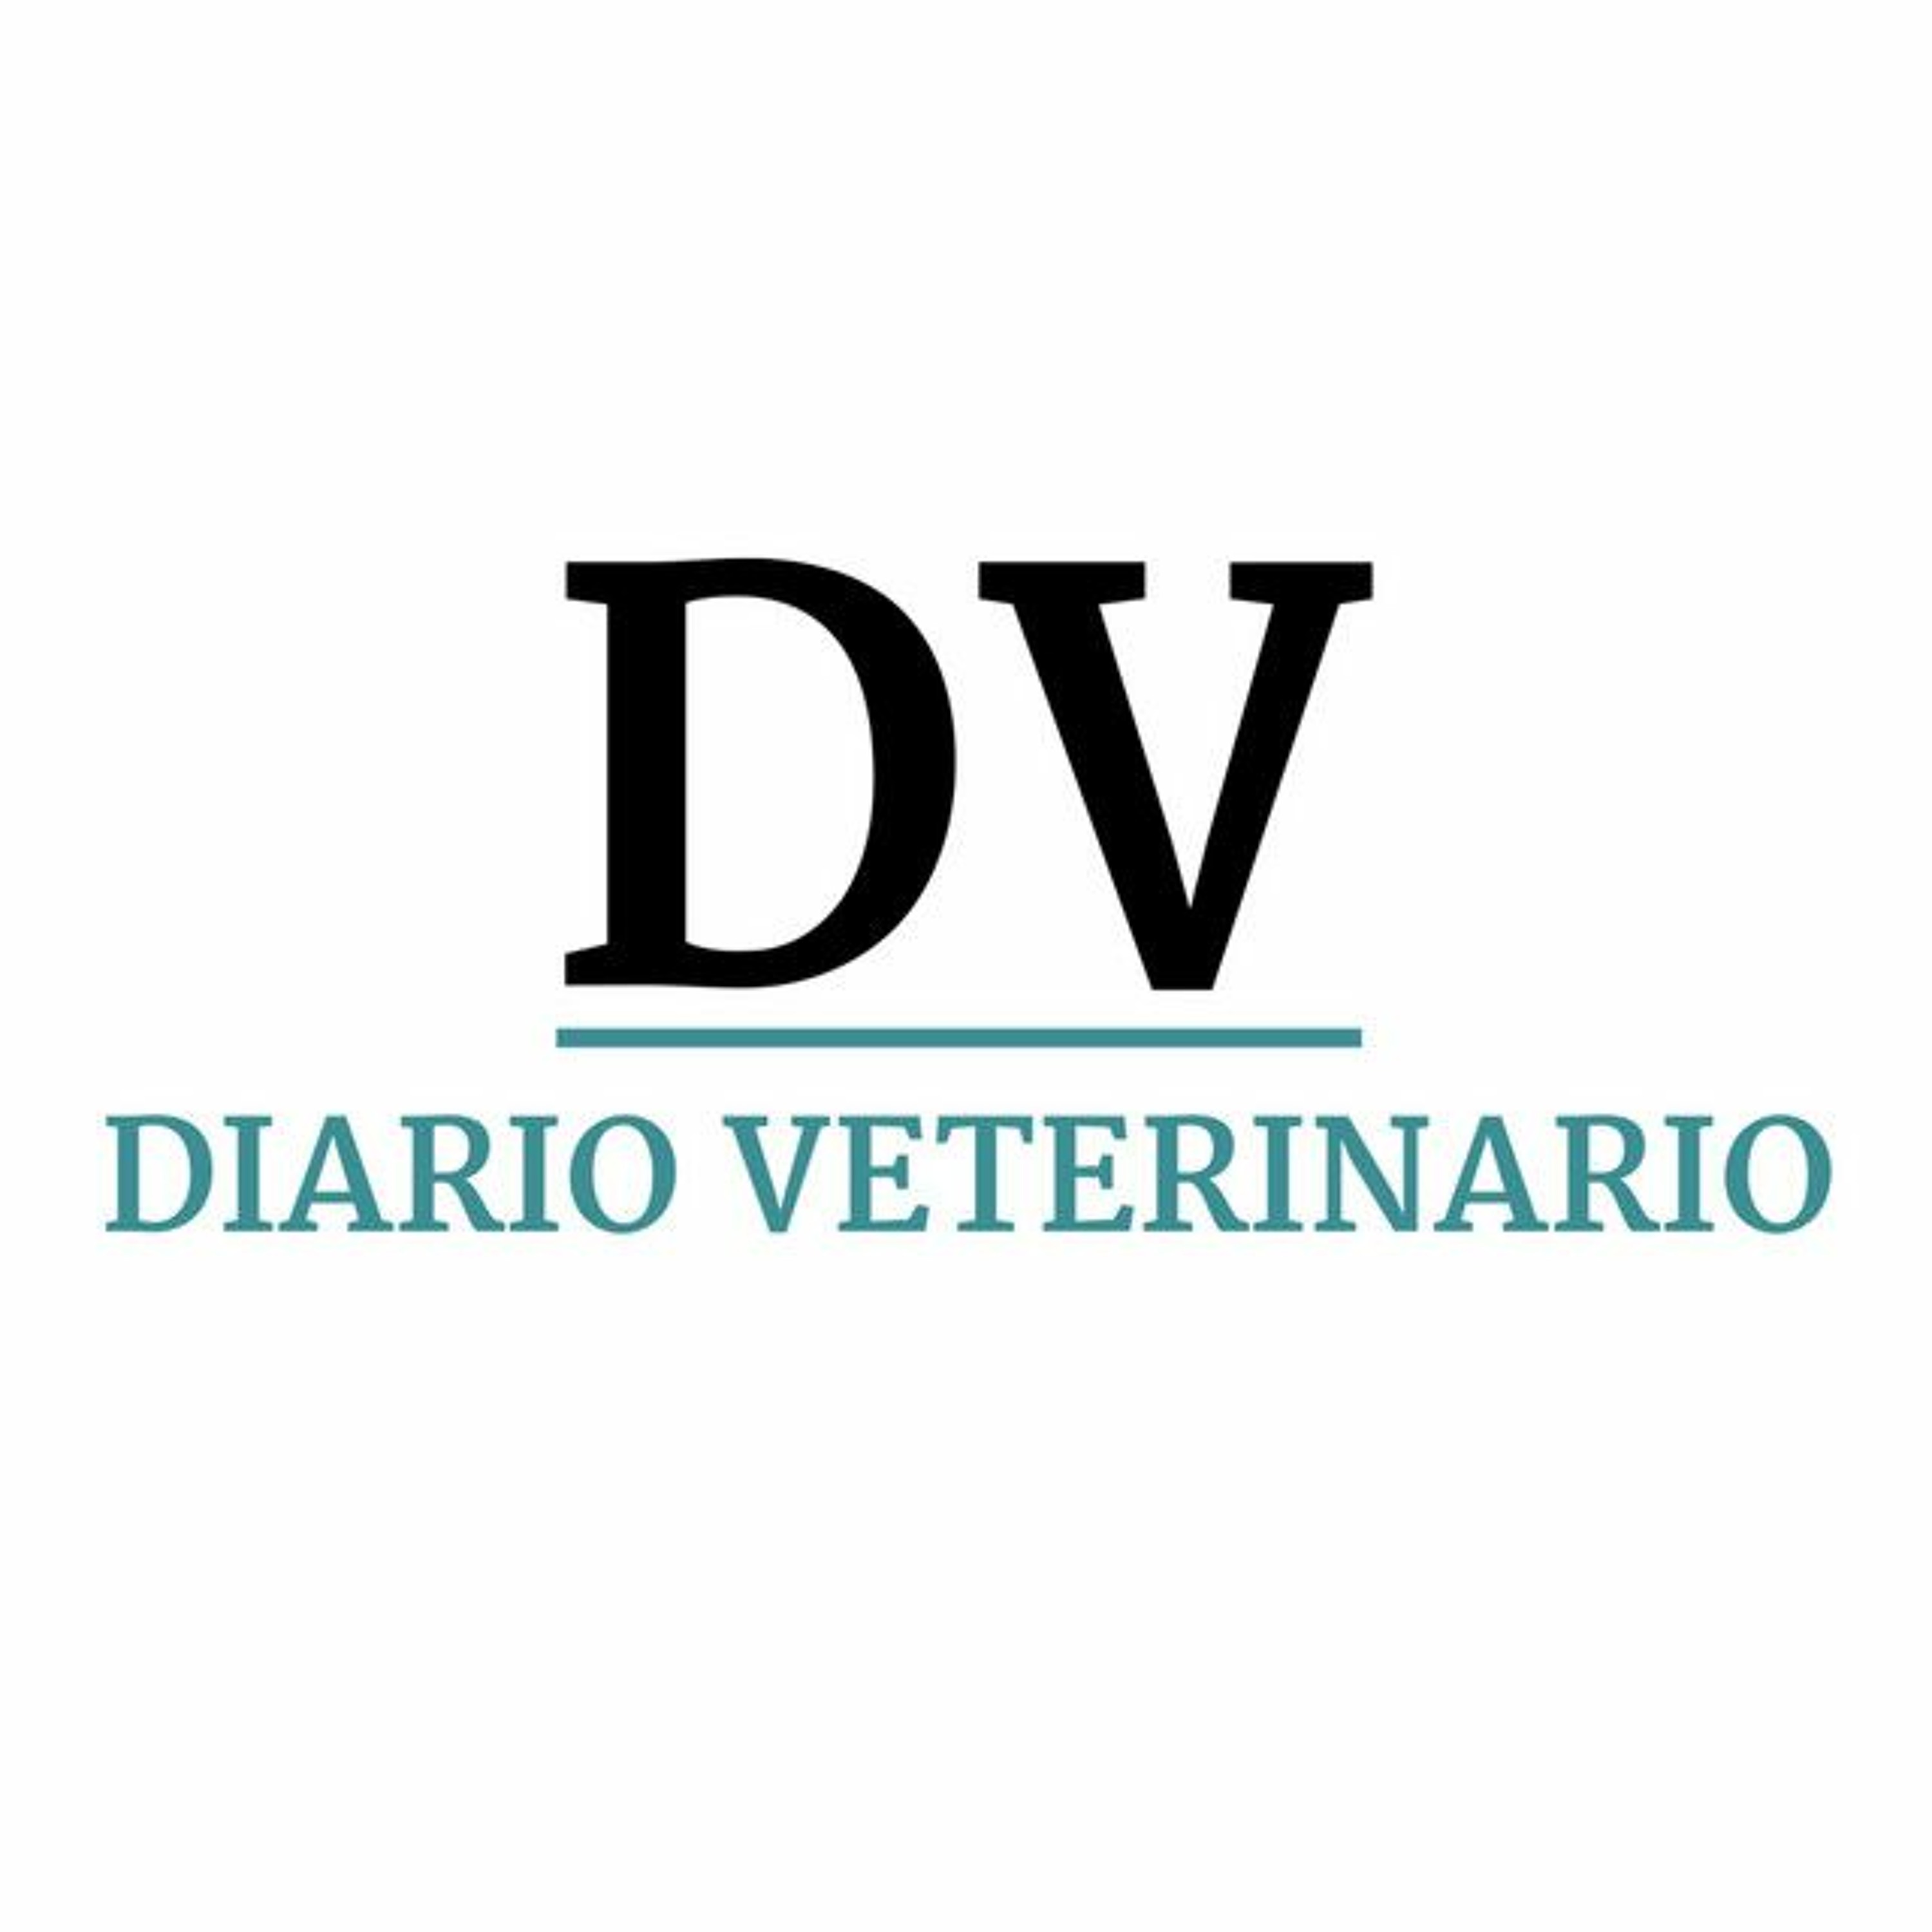 Medicamento veterinario y Ley de Bienestar Animal